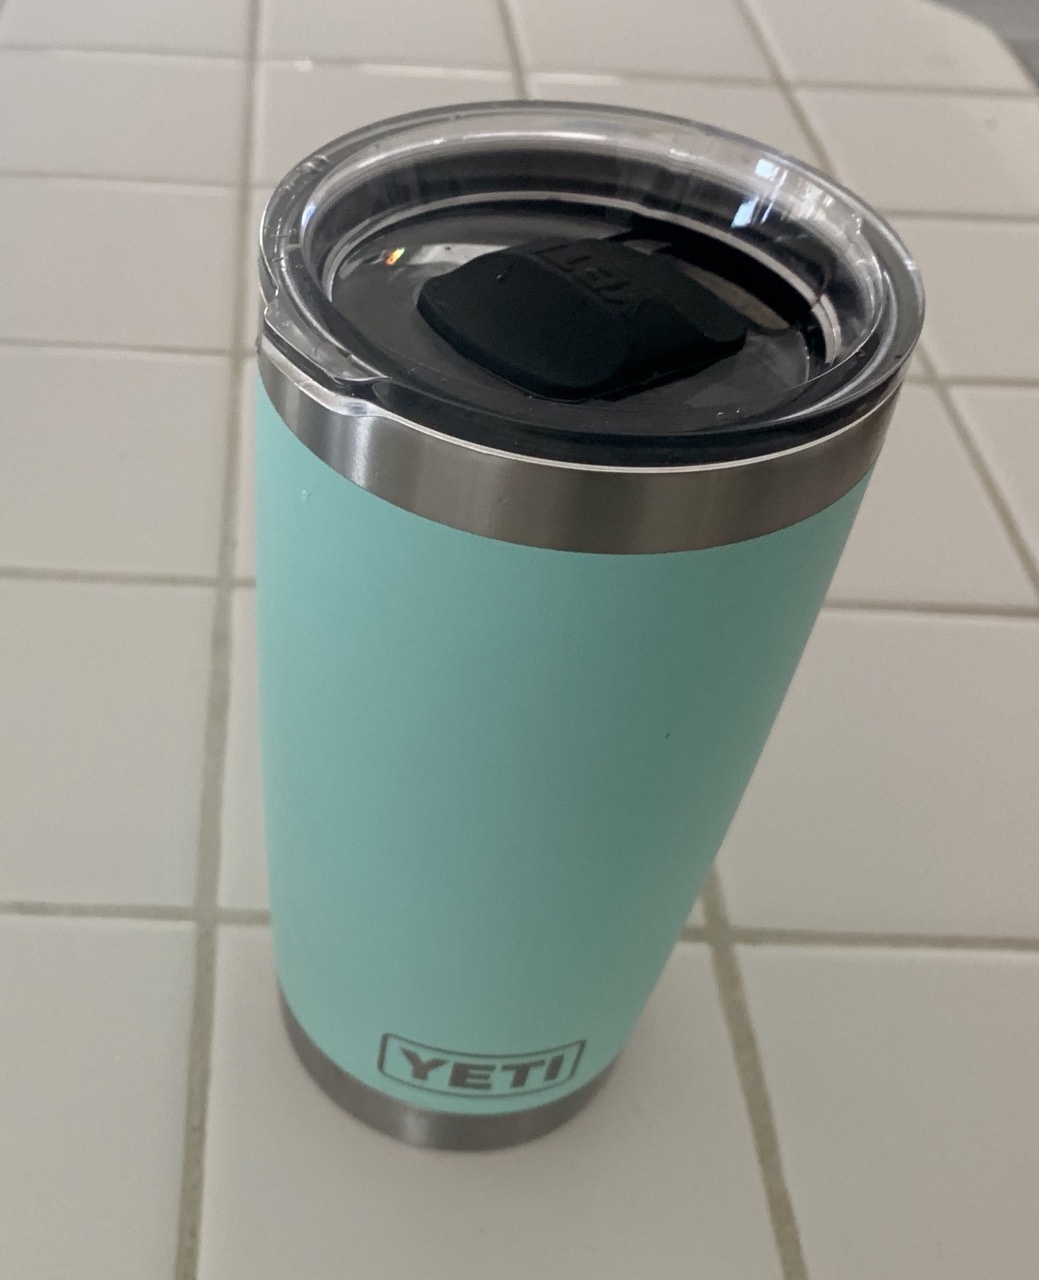 yeti coffee mug lid